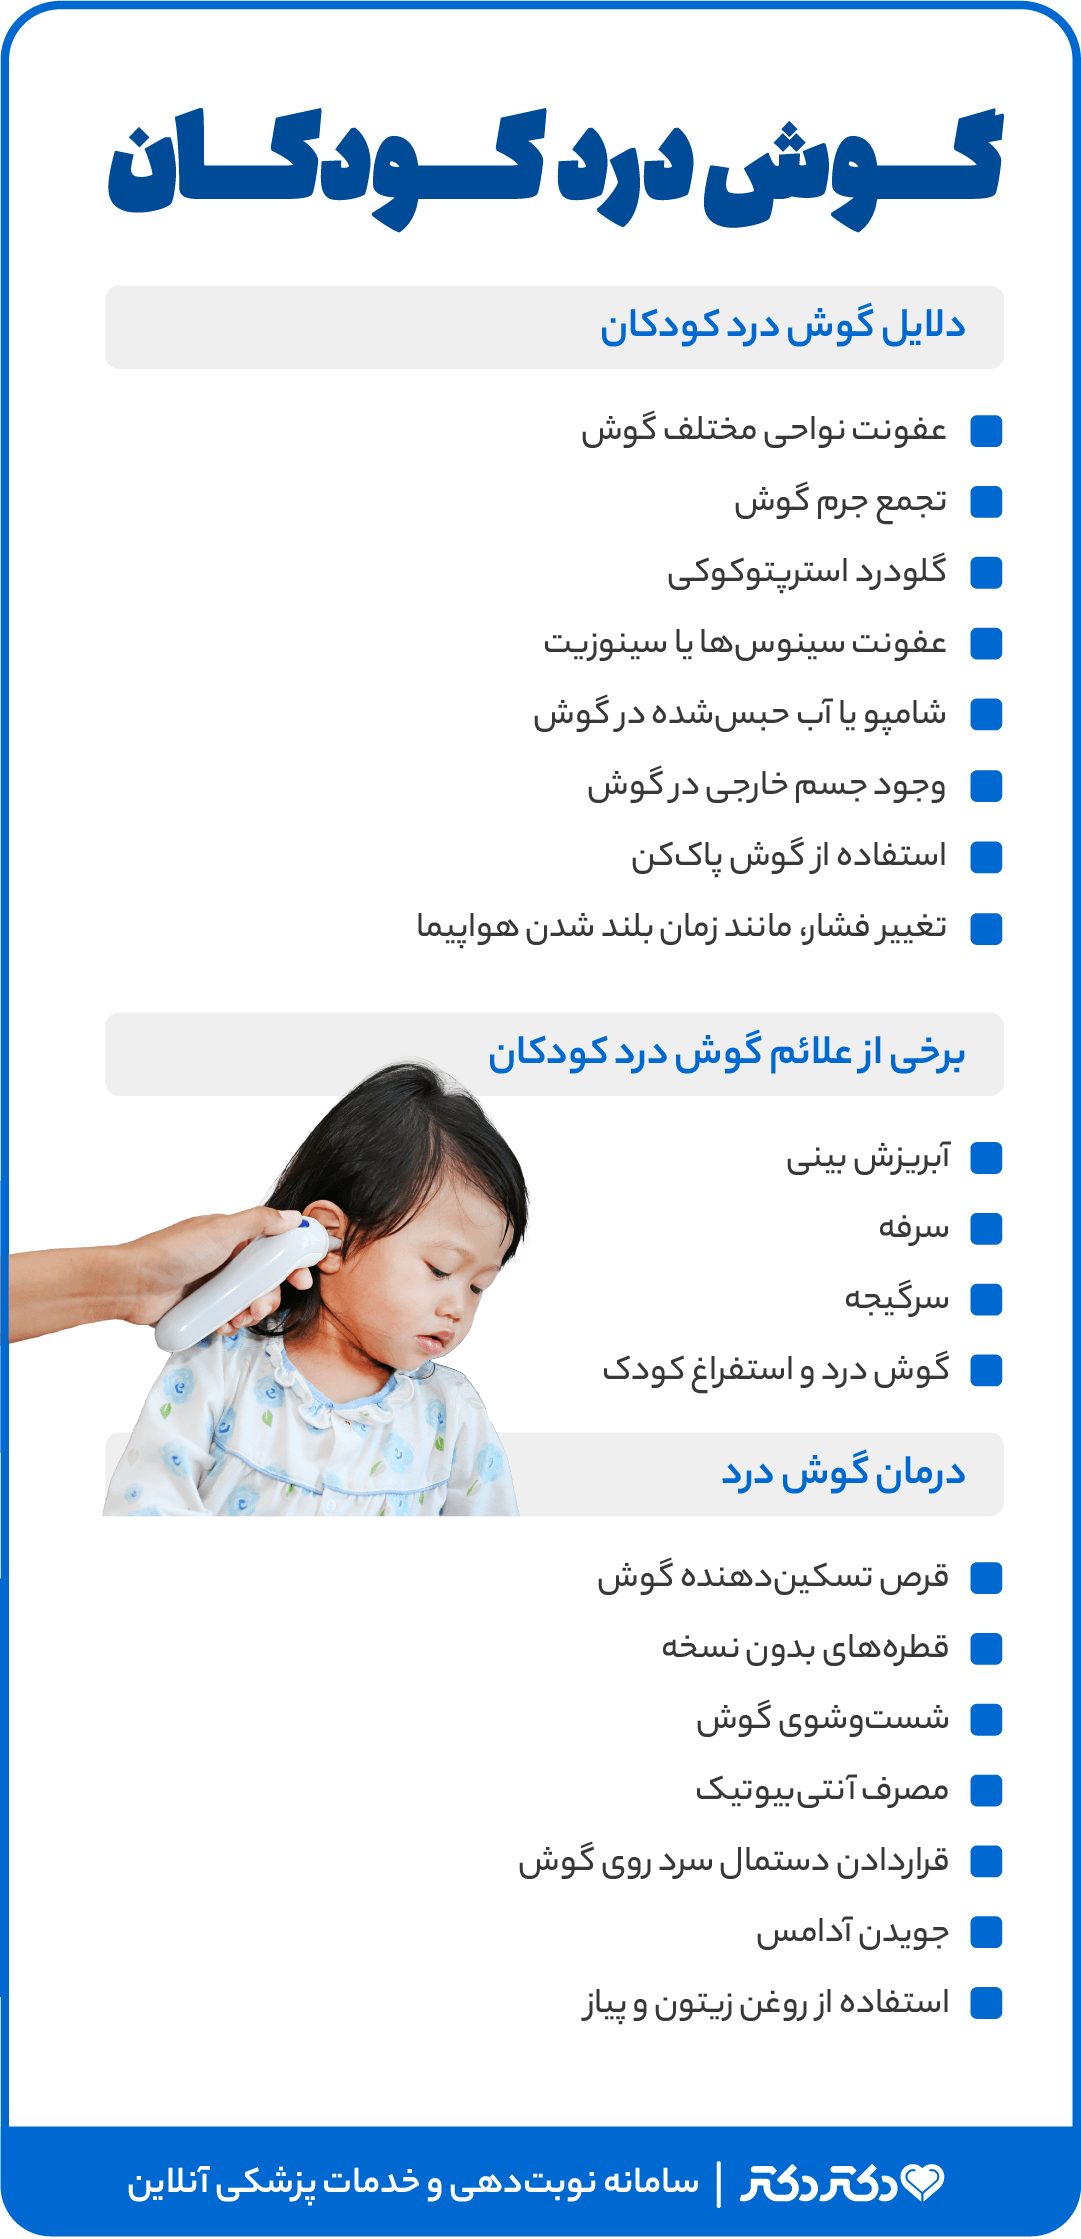 اینفوگرافی گوش درد کودکان